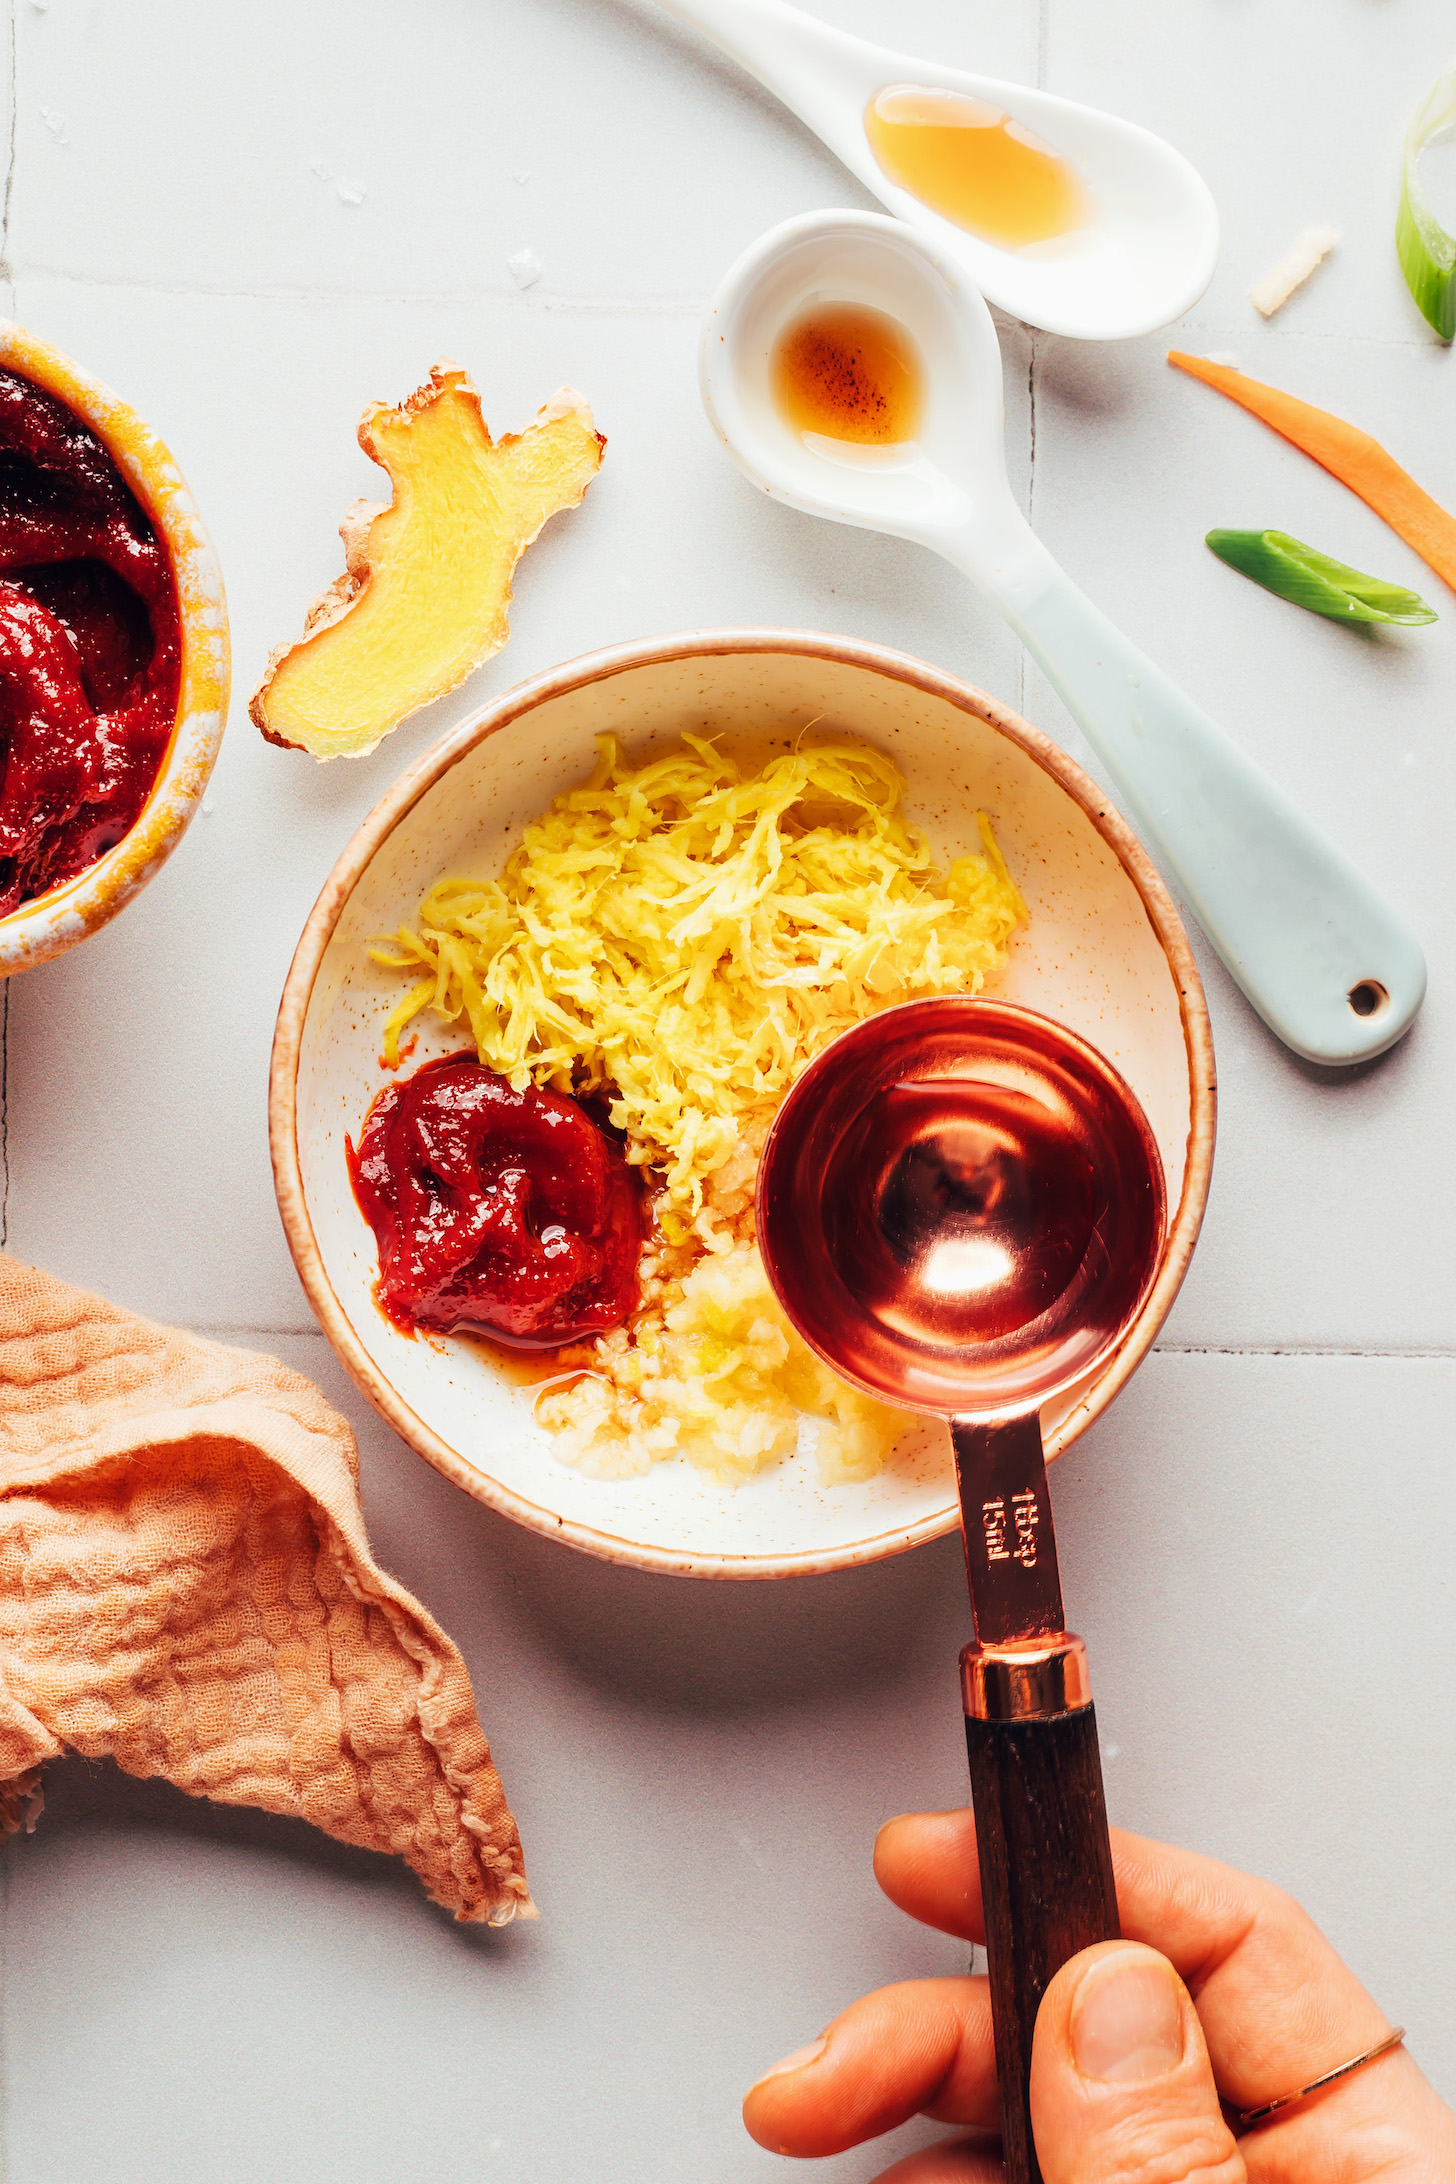 Rendelenmiş zencefil, sarımsak ve gochujang üzerine pirinç sirkesi dökmek